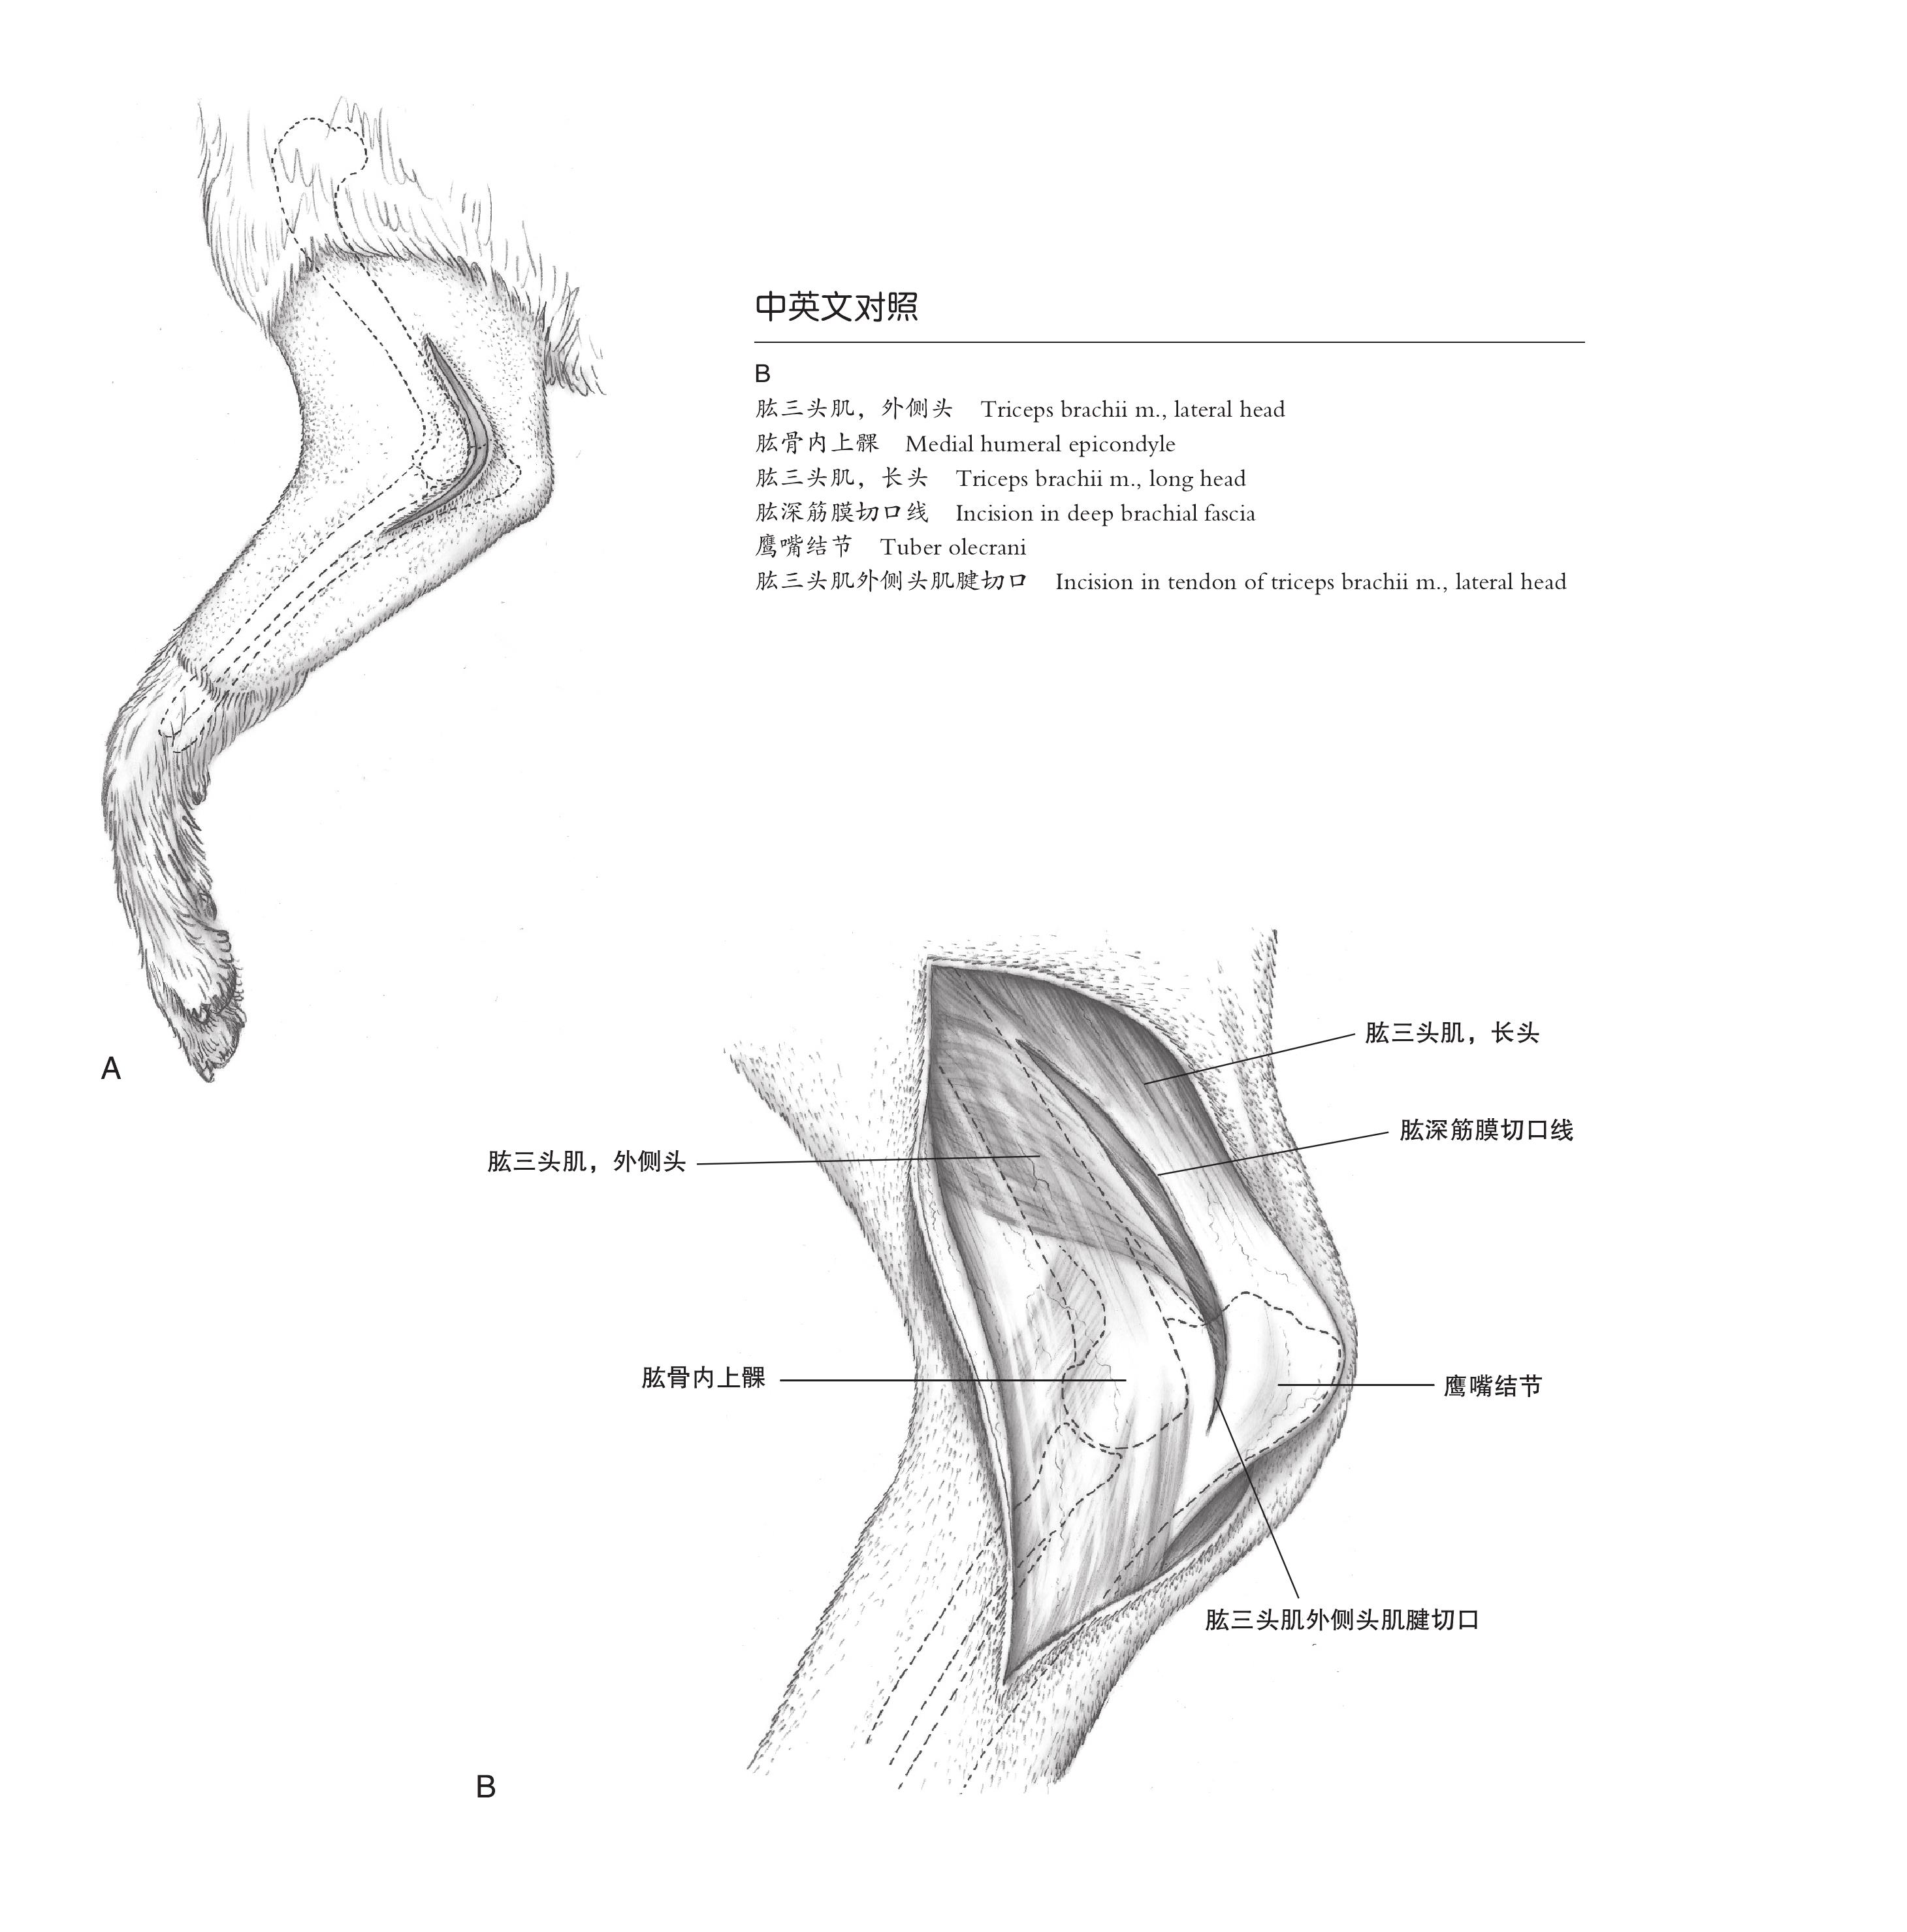 5.7 犬肱骨髁和上髁外侧手术入路